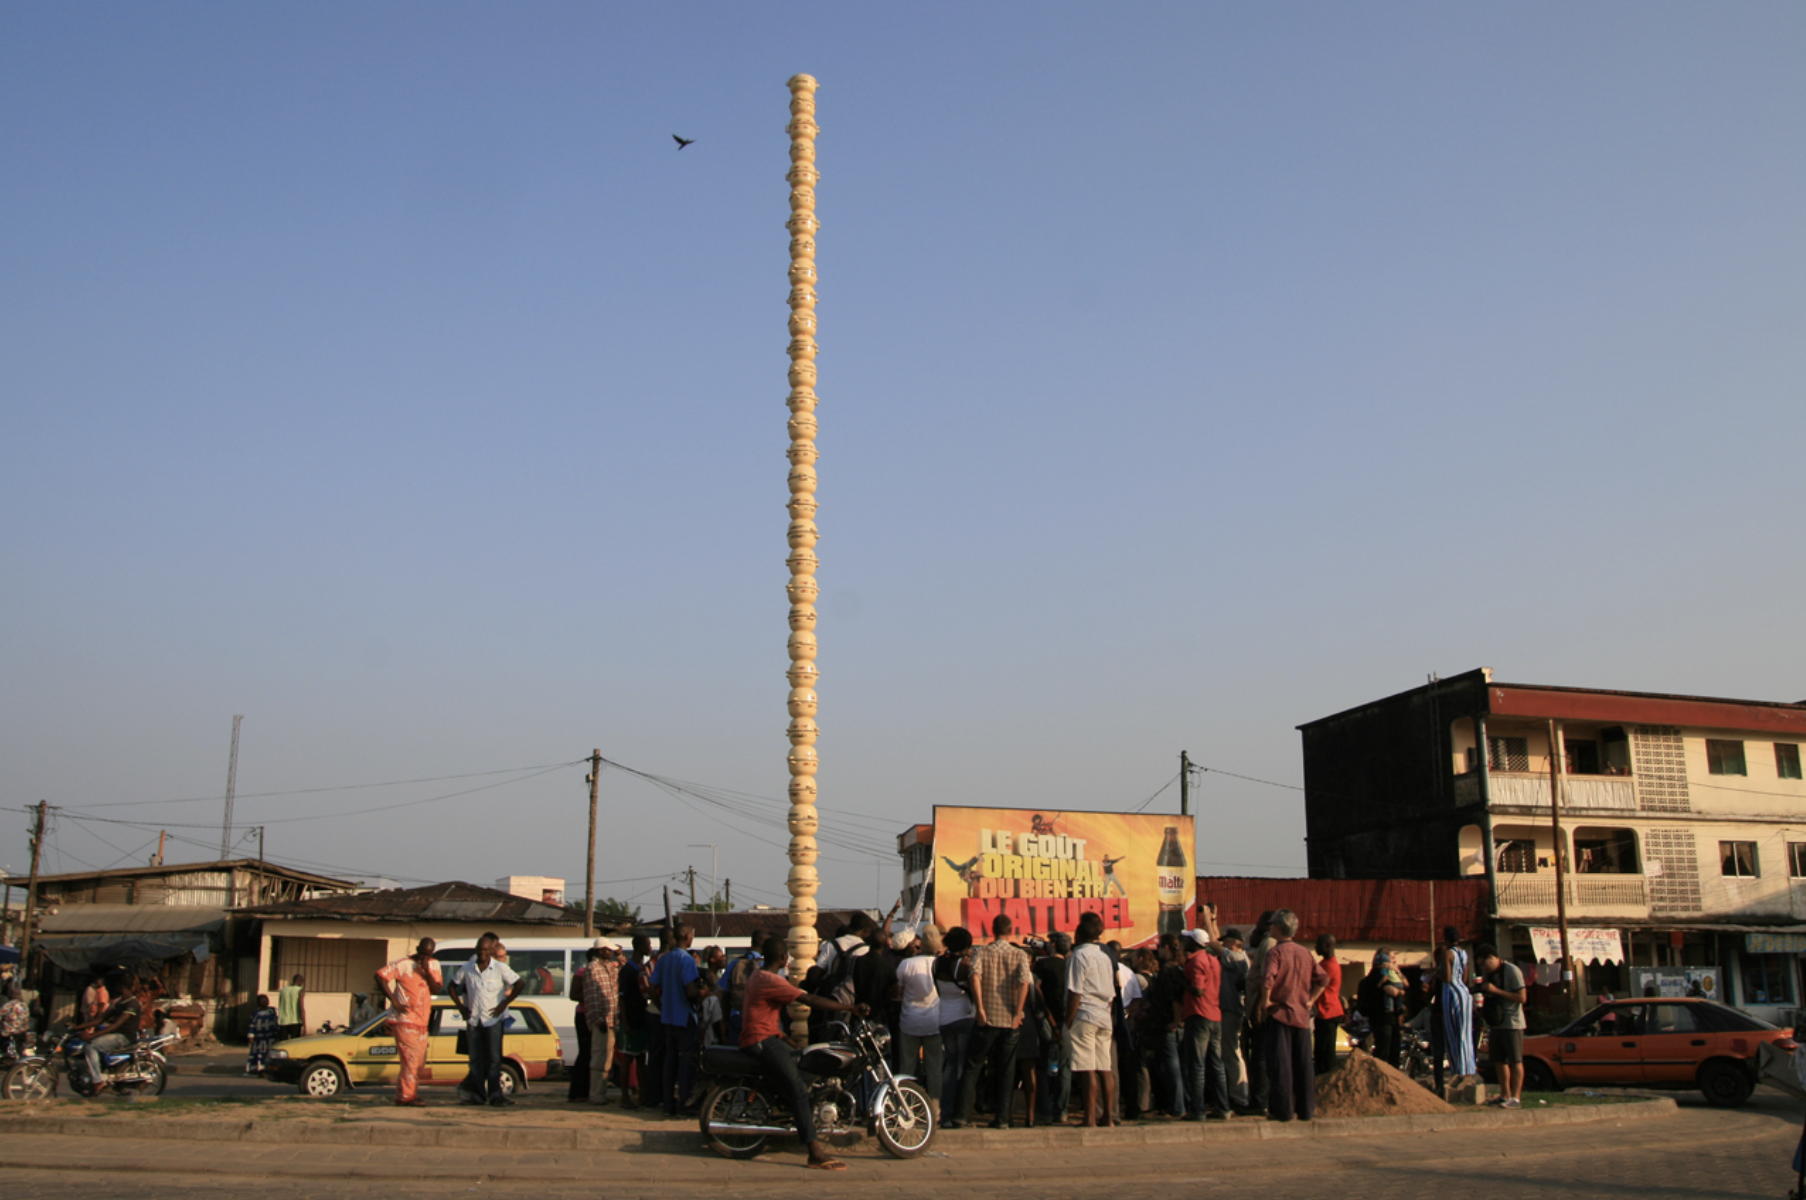 La colonne Pascale, Pascale Marthine Tayou, SUD2010 L'eau et la ville, RAW Material Dakar